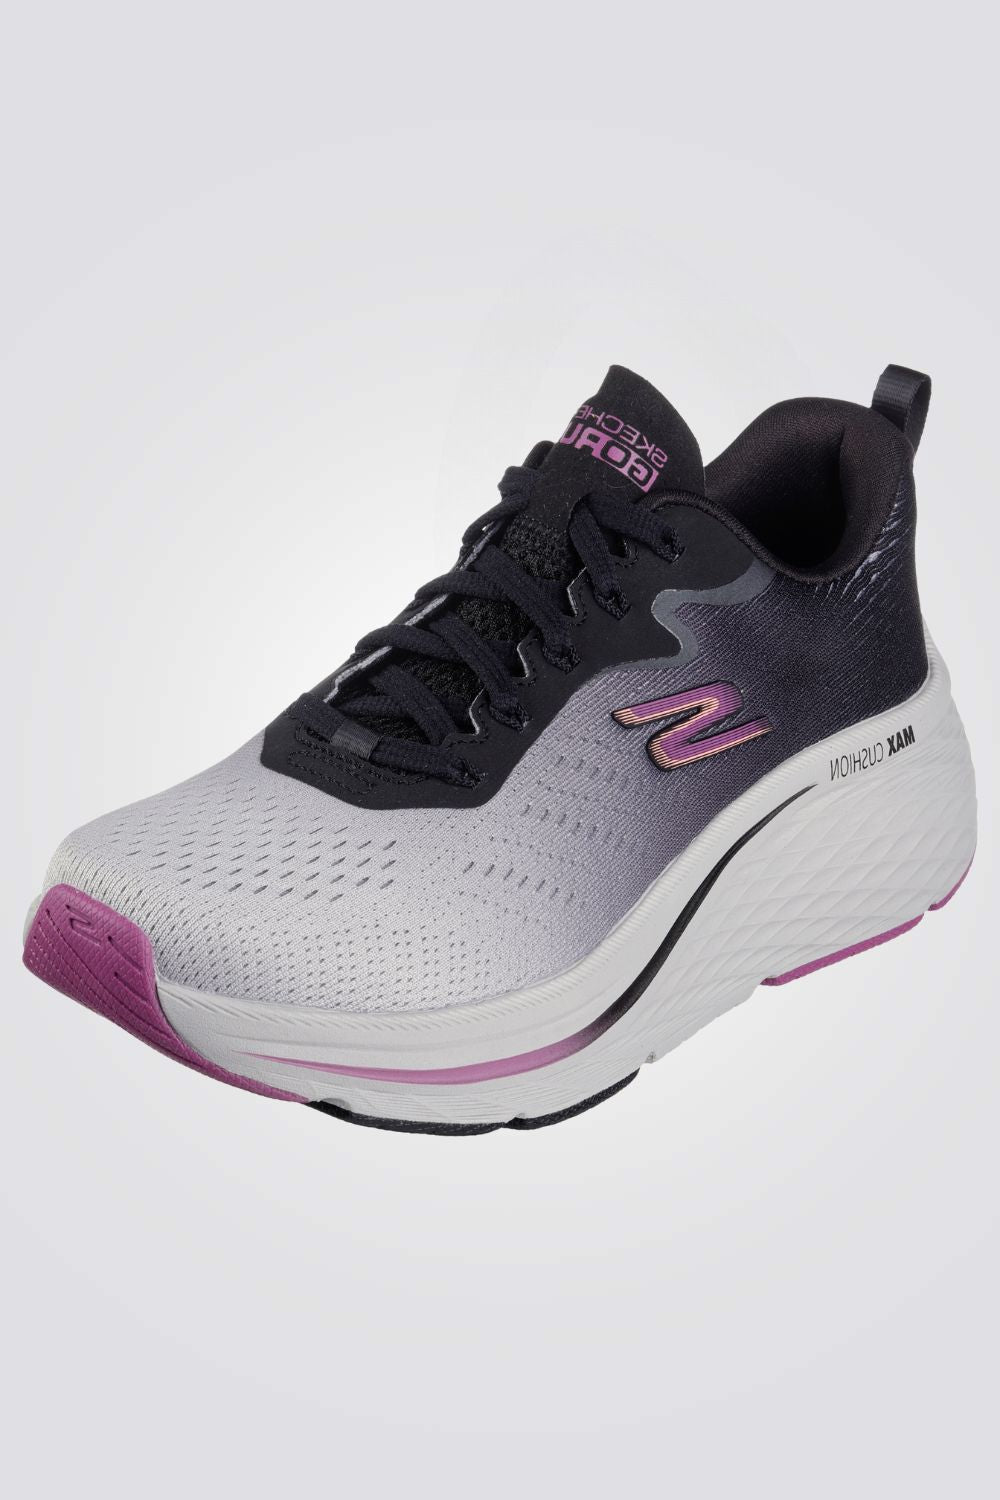 נעלי ספורט לנשים  GOrun Max Cshioning Elite - Superior Stride בצבע אפור וסגול